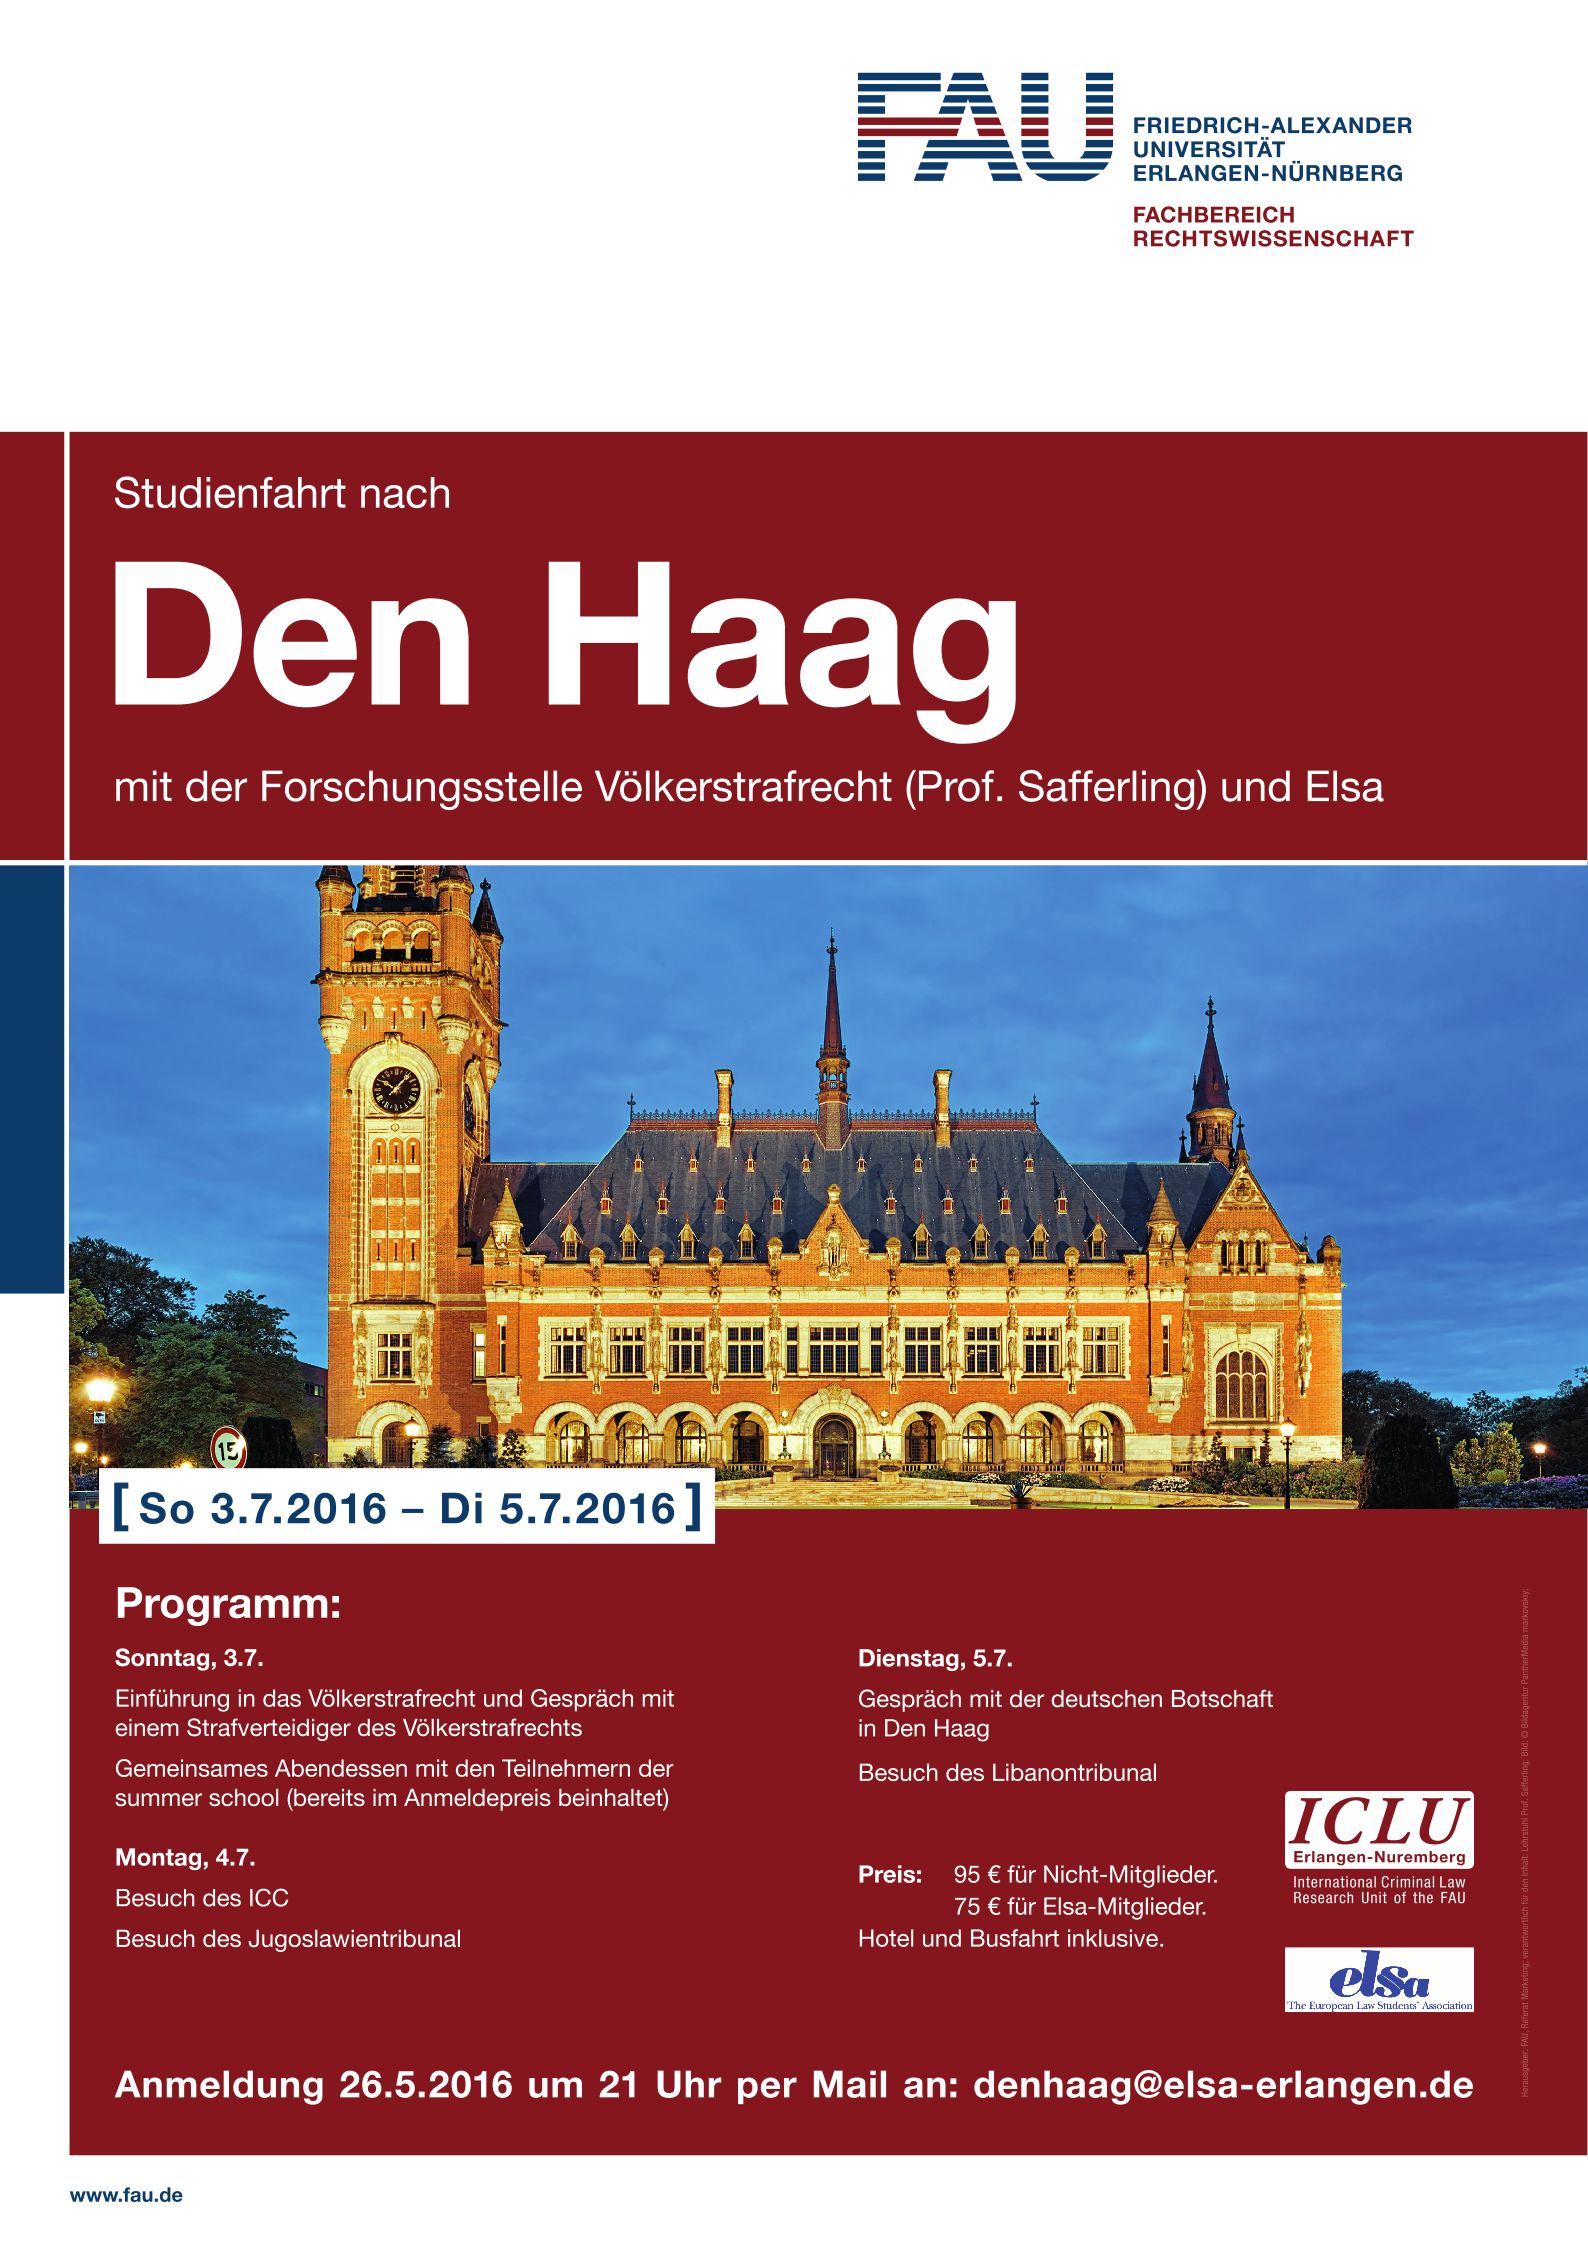 Zum Artikel "Noch einmal wenige Plätze frei für Fahrt nach Den Haag!"